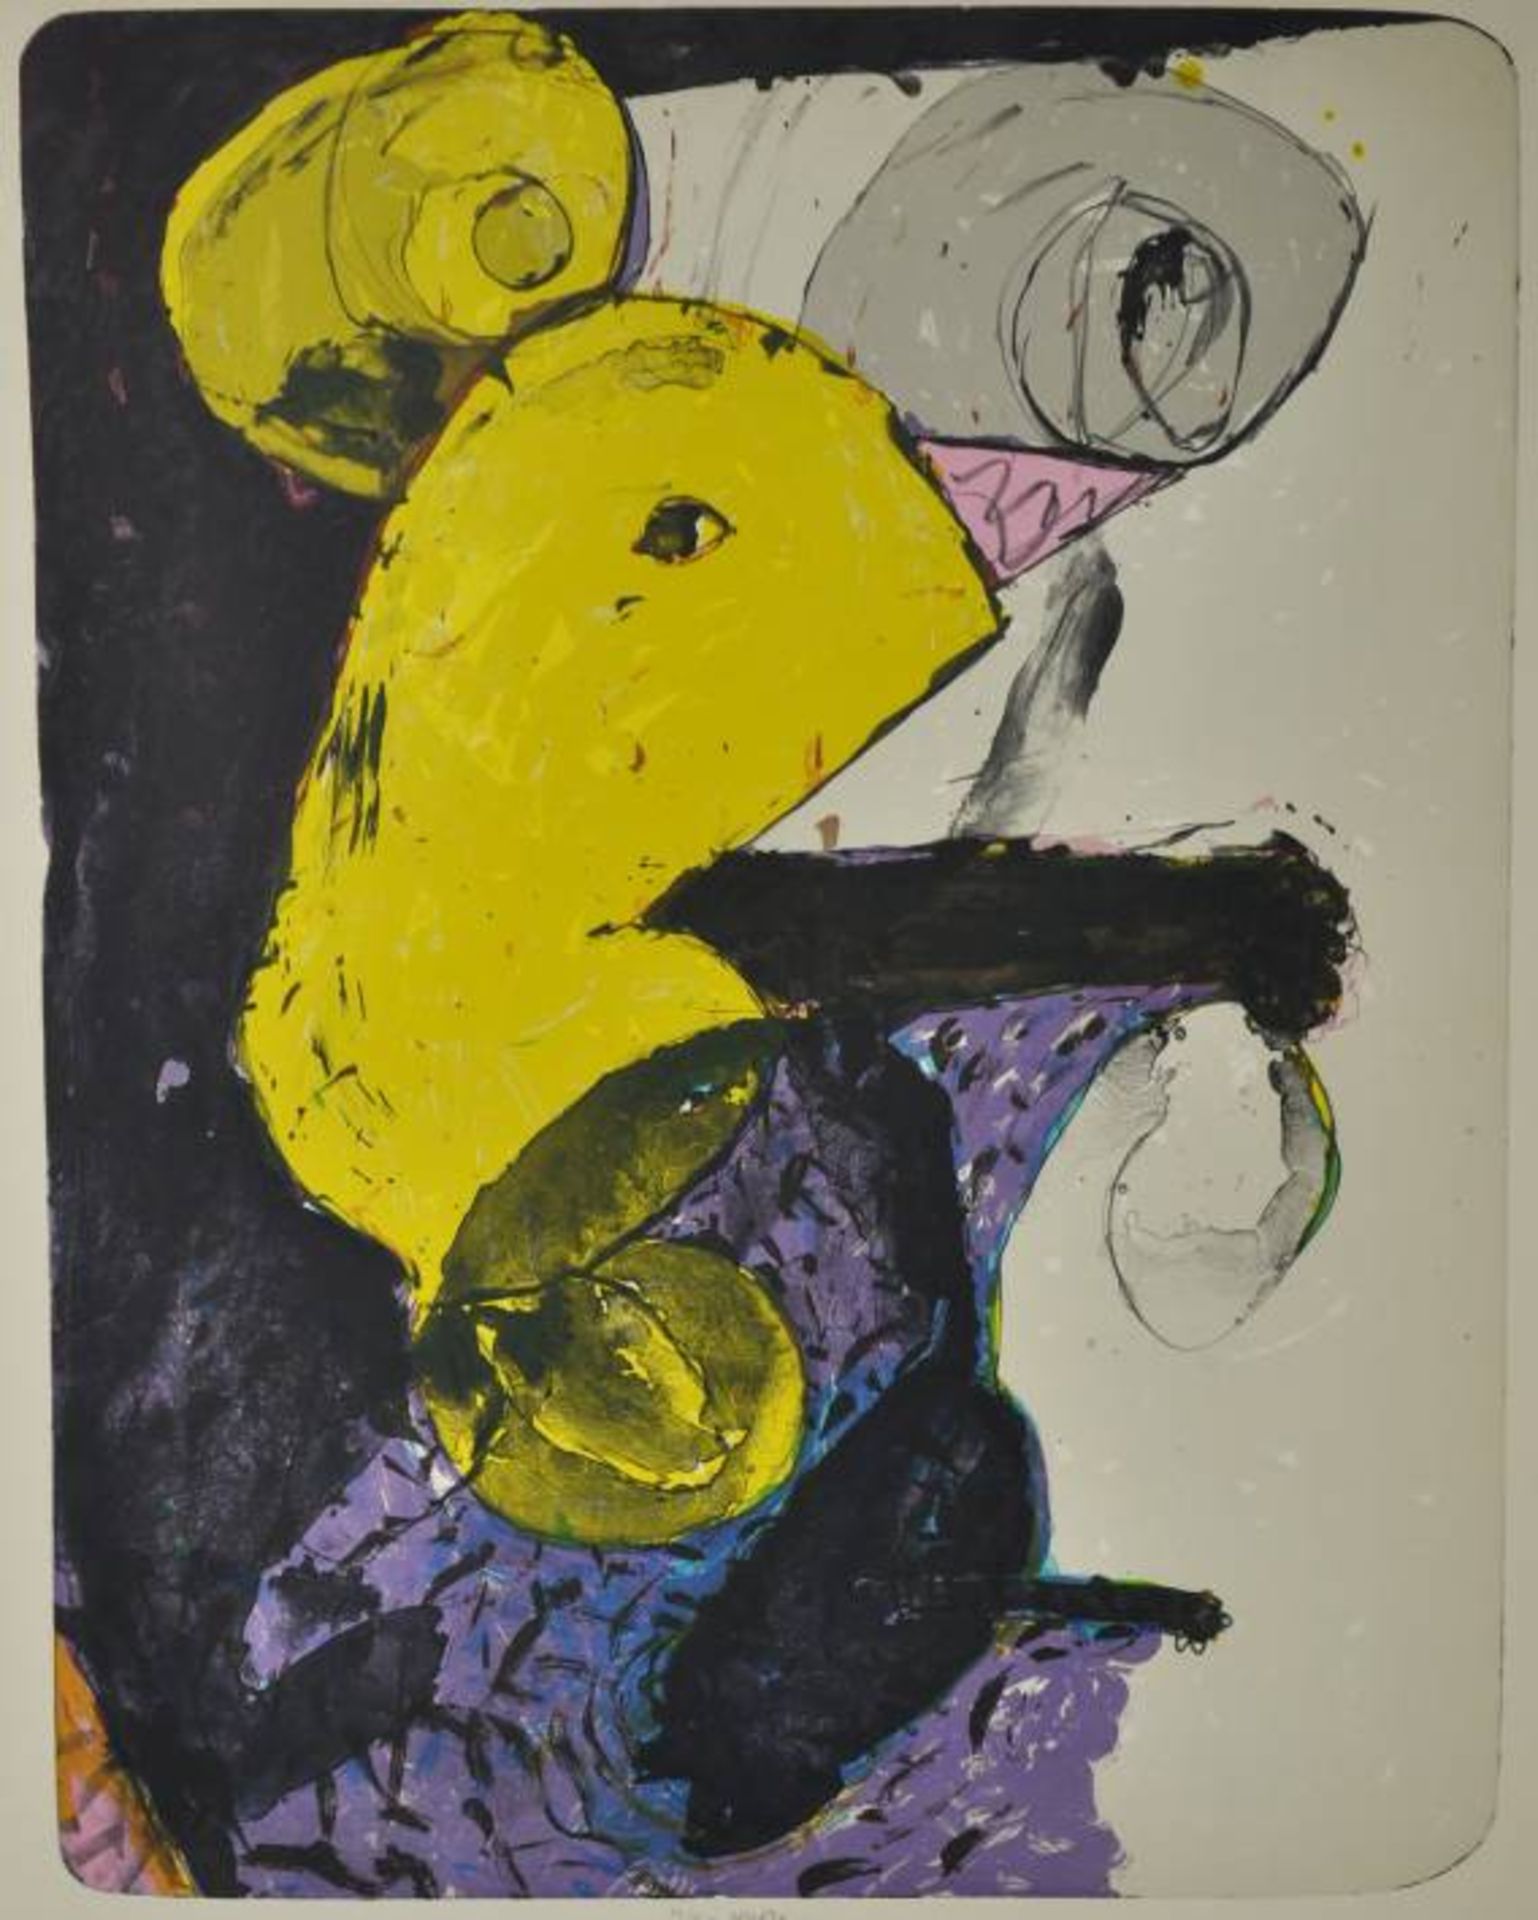 ROUCKA Pavel (1942 Prag) "Abstrakt", polychrome abstrahierende Darstellung in gelb, grau u. violett,